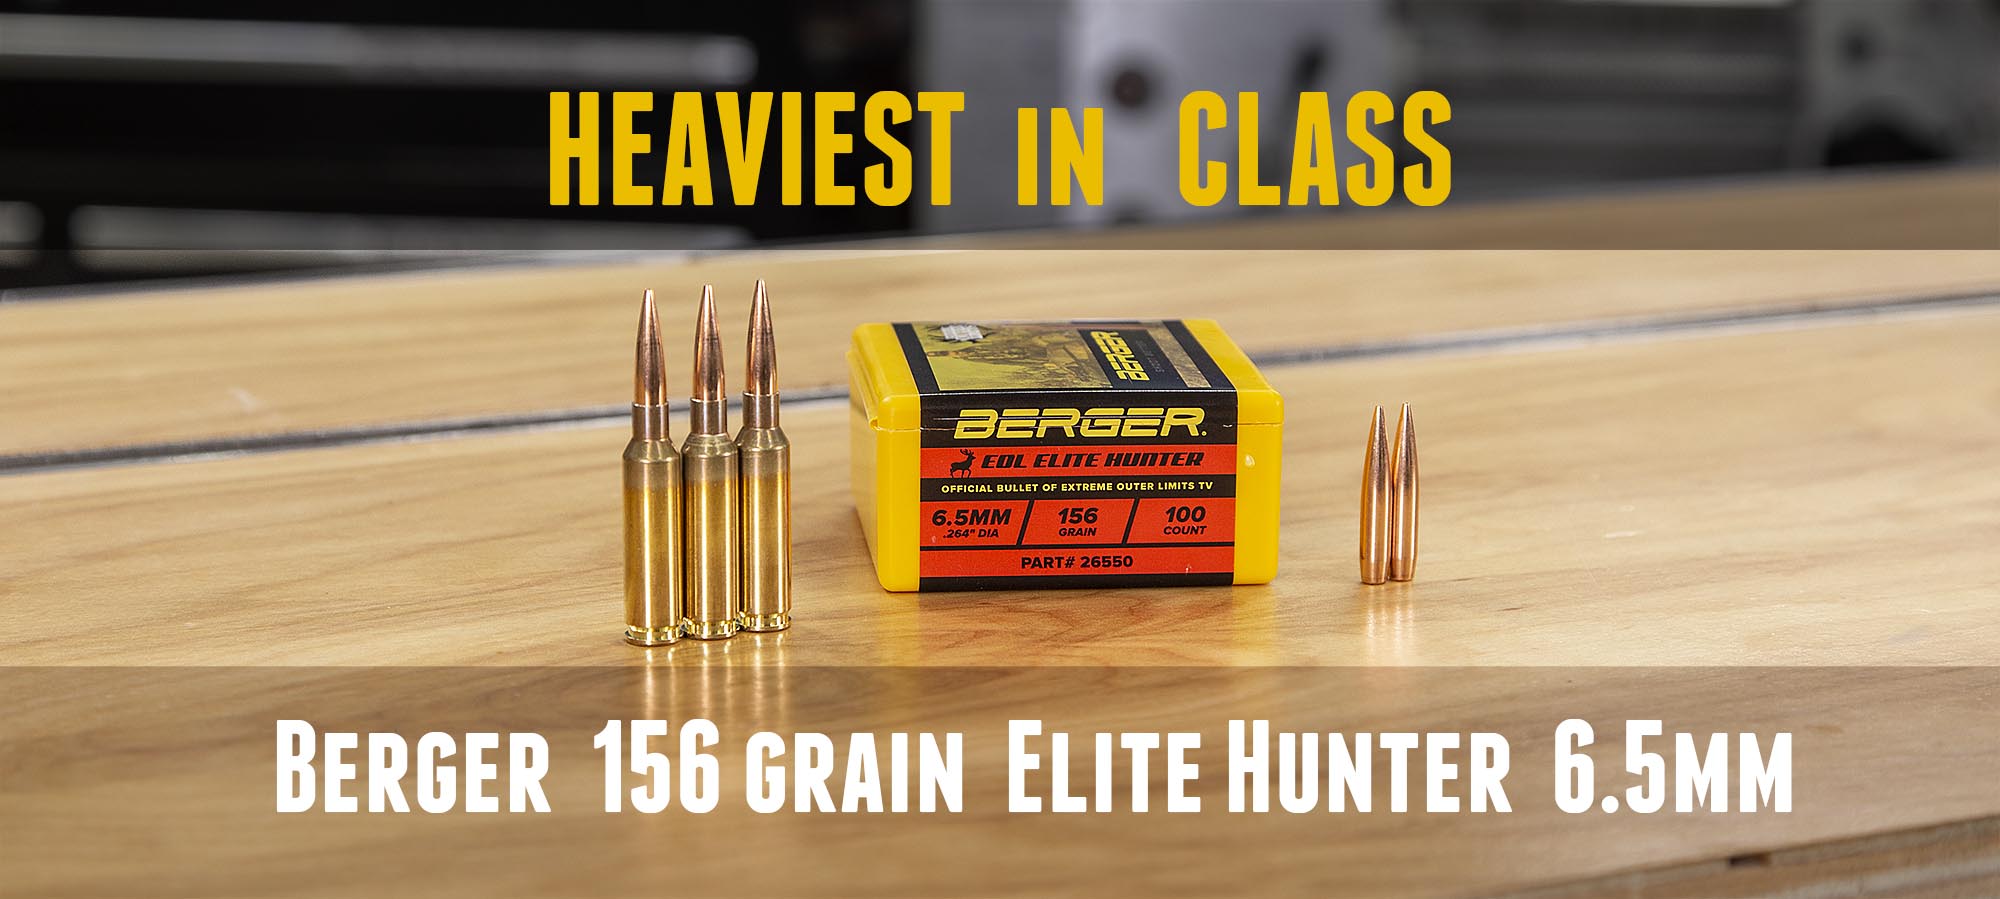 TESTED: NEW Berger 156 grain 6.5mm Elite Hunter Bullets – Ultimate Reloader